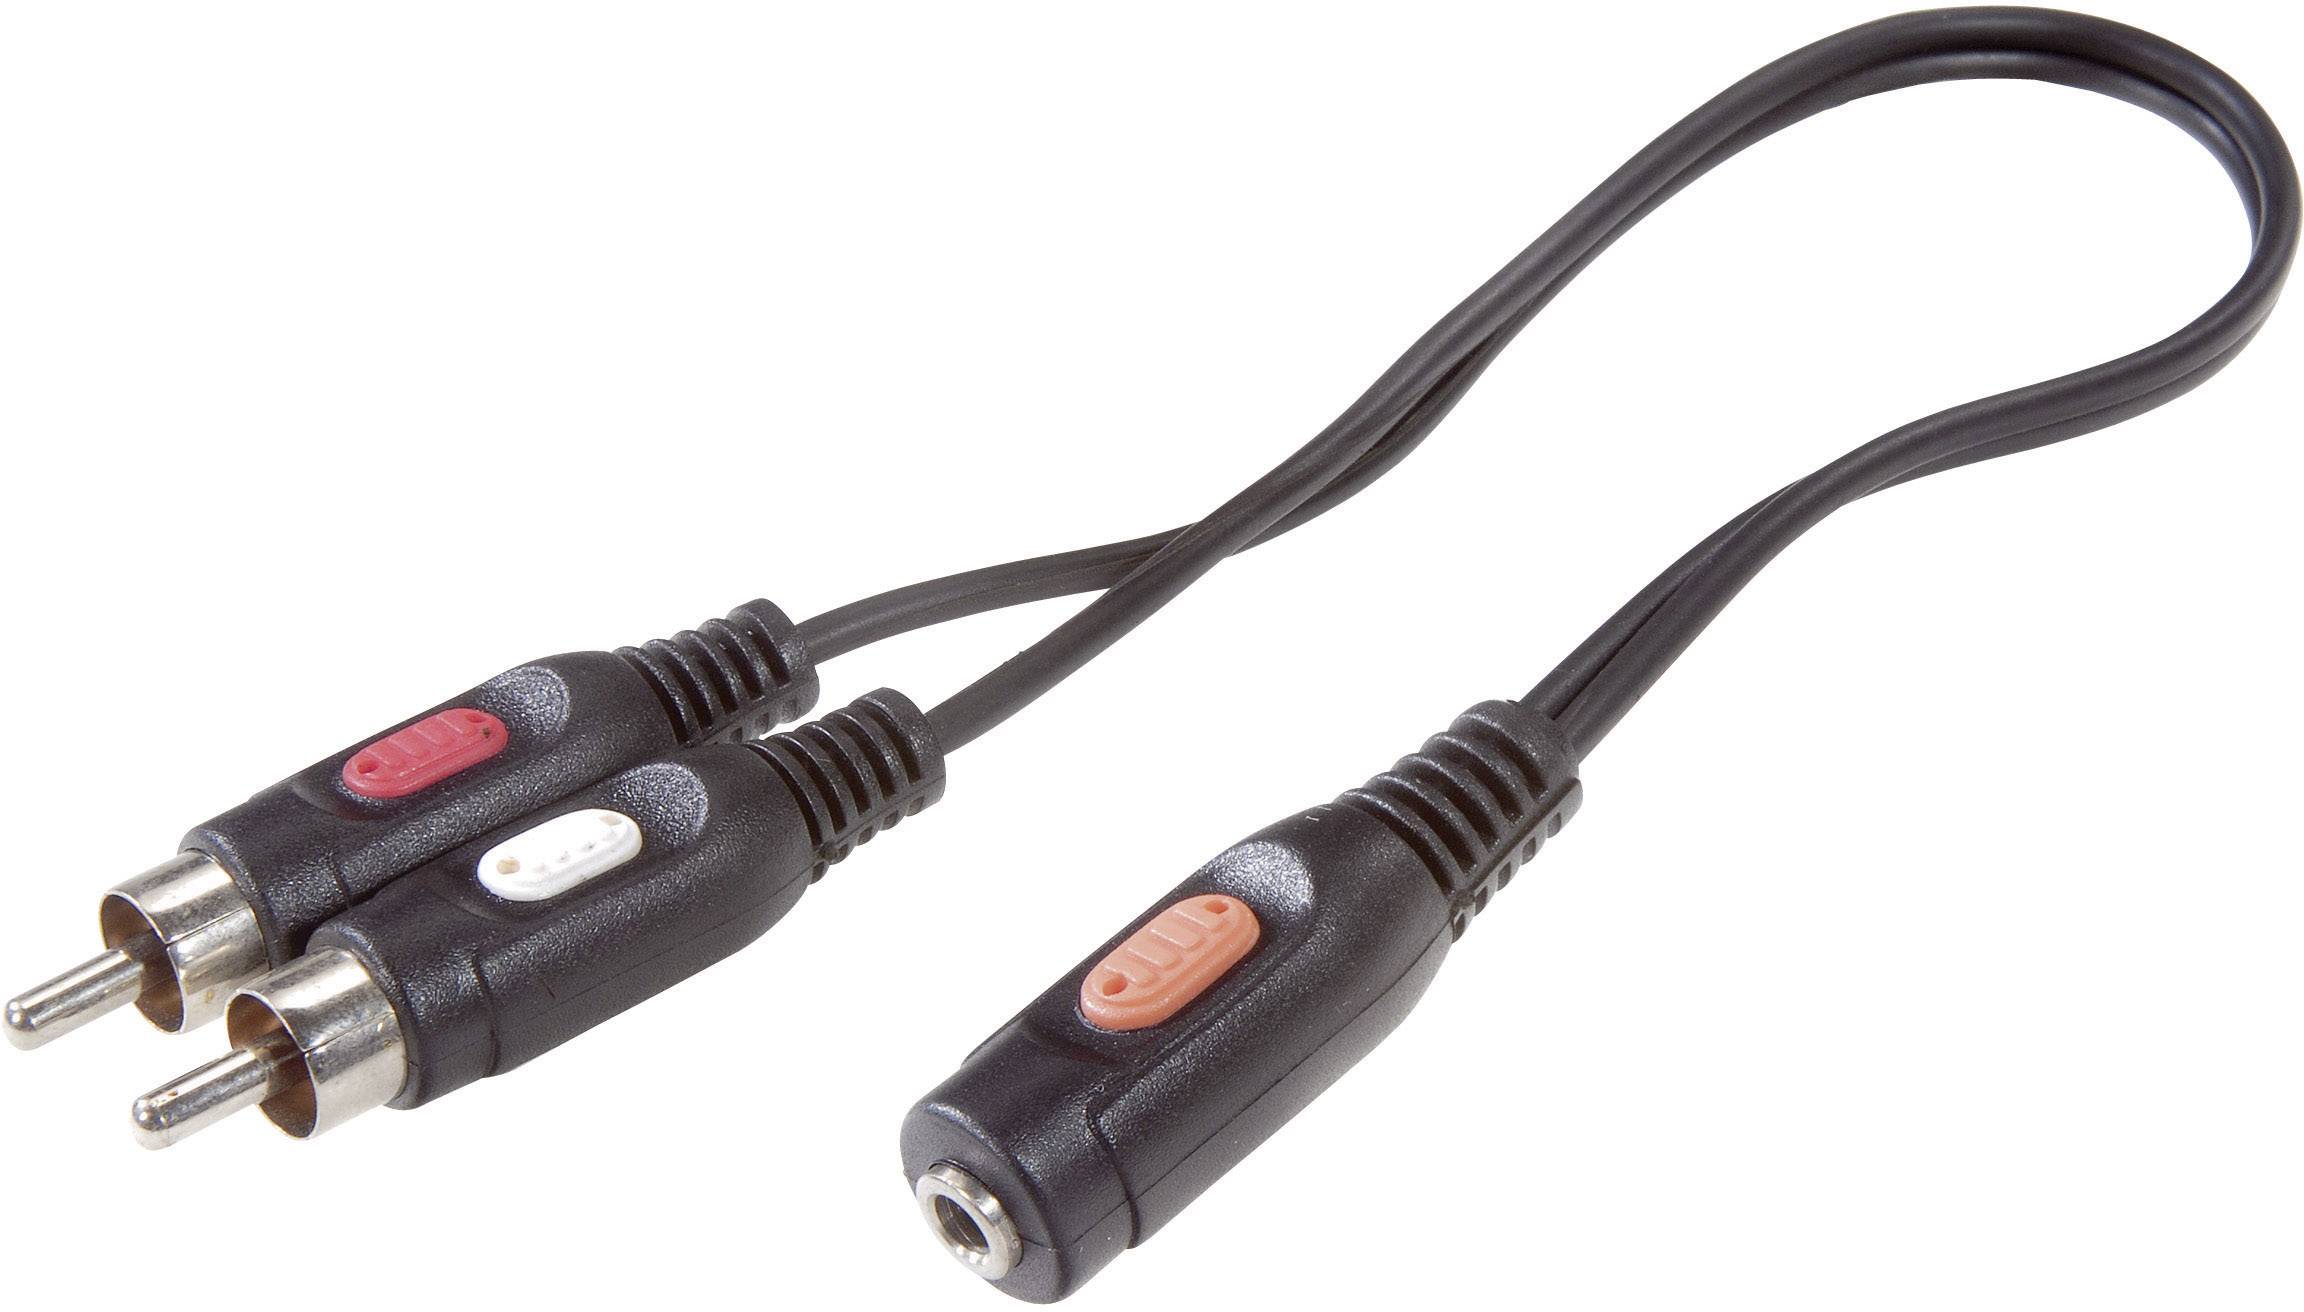 CONRAD SpeaKa Professional Cinch / Klinke Audio Anschlusskabel [2x Cinch-Stecker - 1x Klinkenbuchse